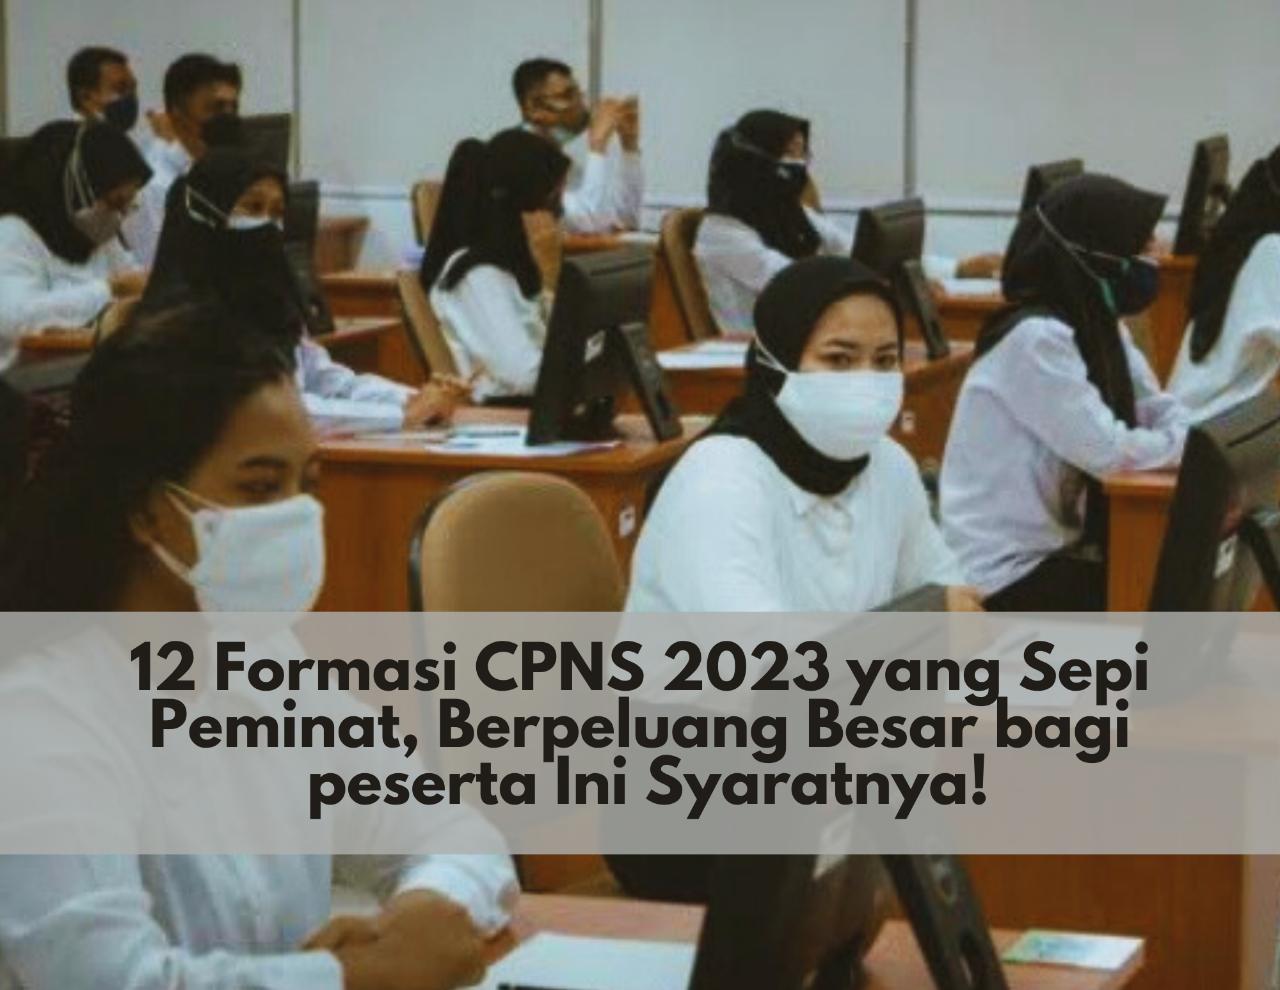 Tertarik Daftar? 12 Formasi CPNS 2023 yang Sepi Peminat, Berpeluang Besar bagi Peserta Ini Syaratnya! 